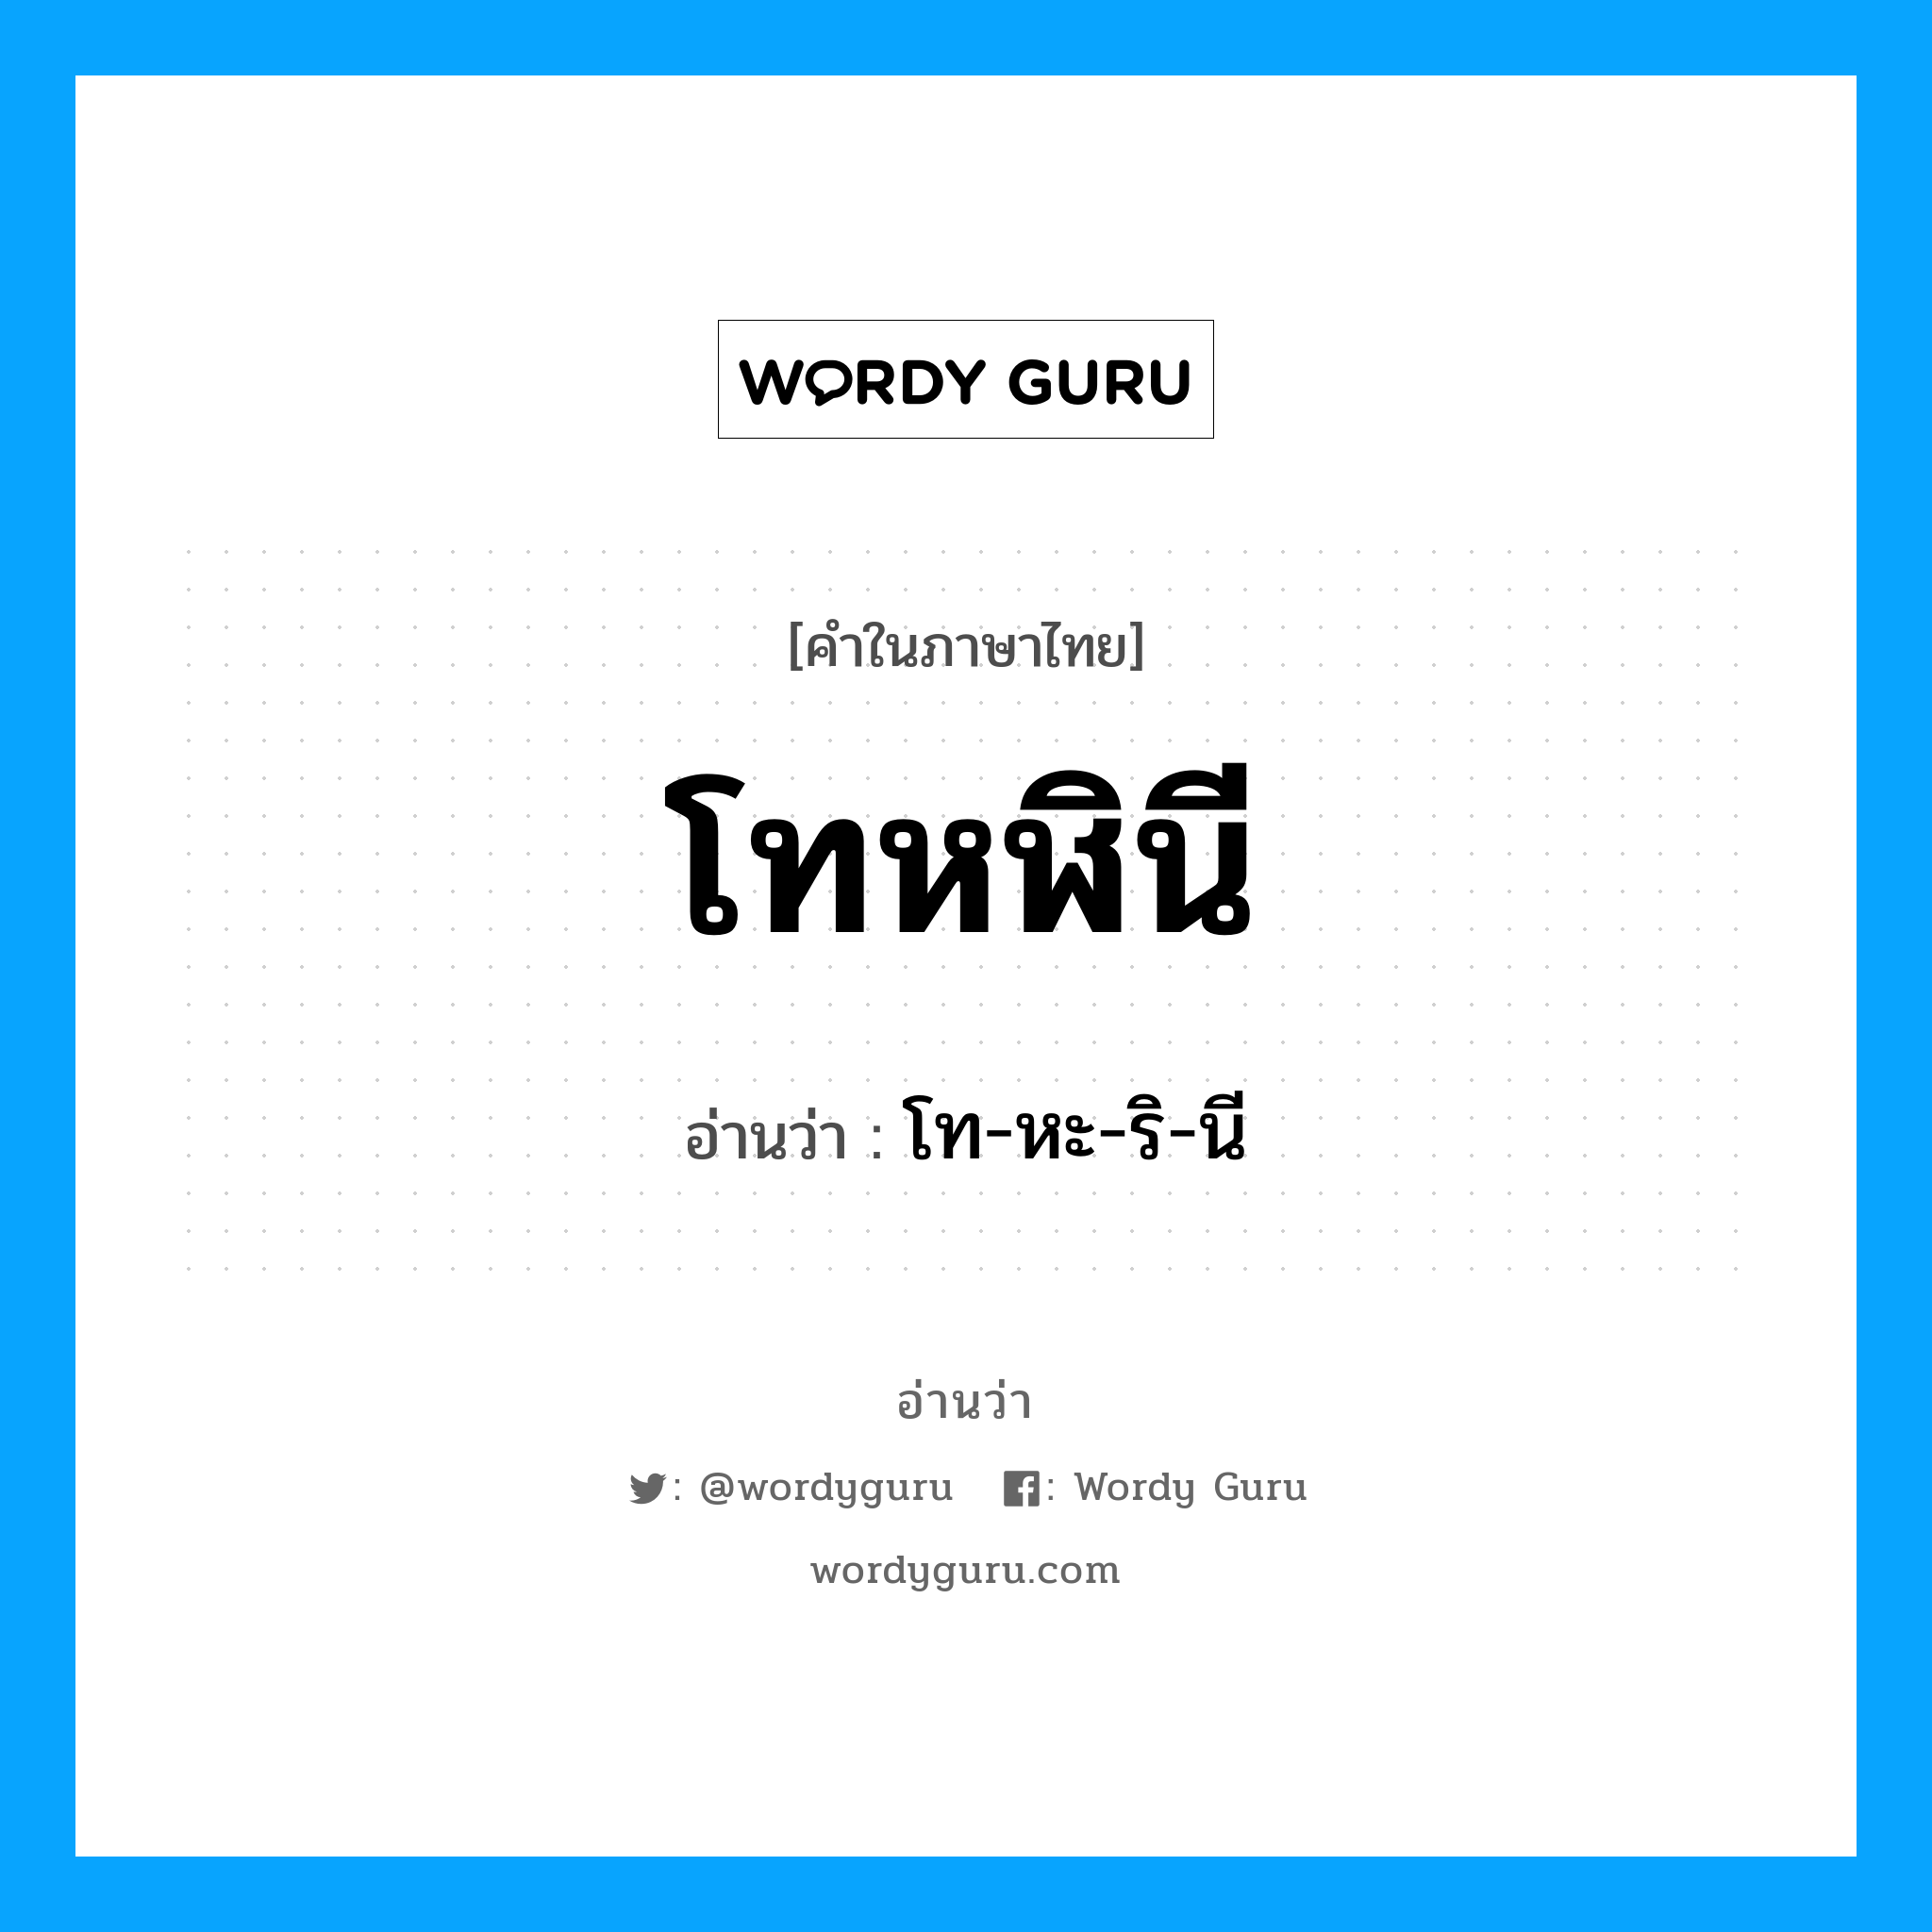 โท-หะ-ริ-นี เป็นคำอ่านของคำไหน?, คำในภาษาไทย โท-หะ-ริ-นี อ่านว่า โทหฬินี